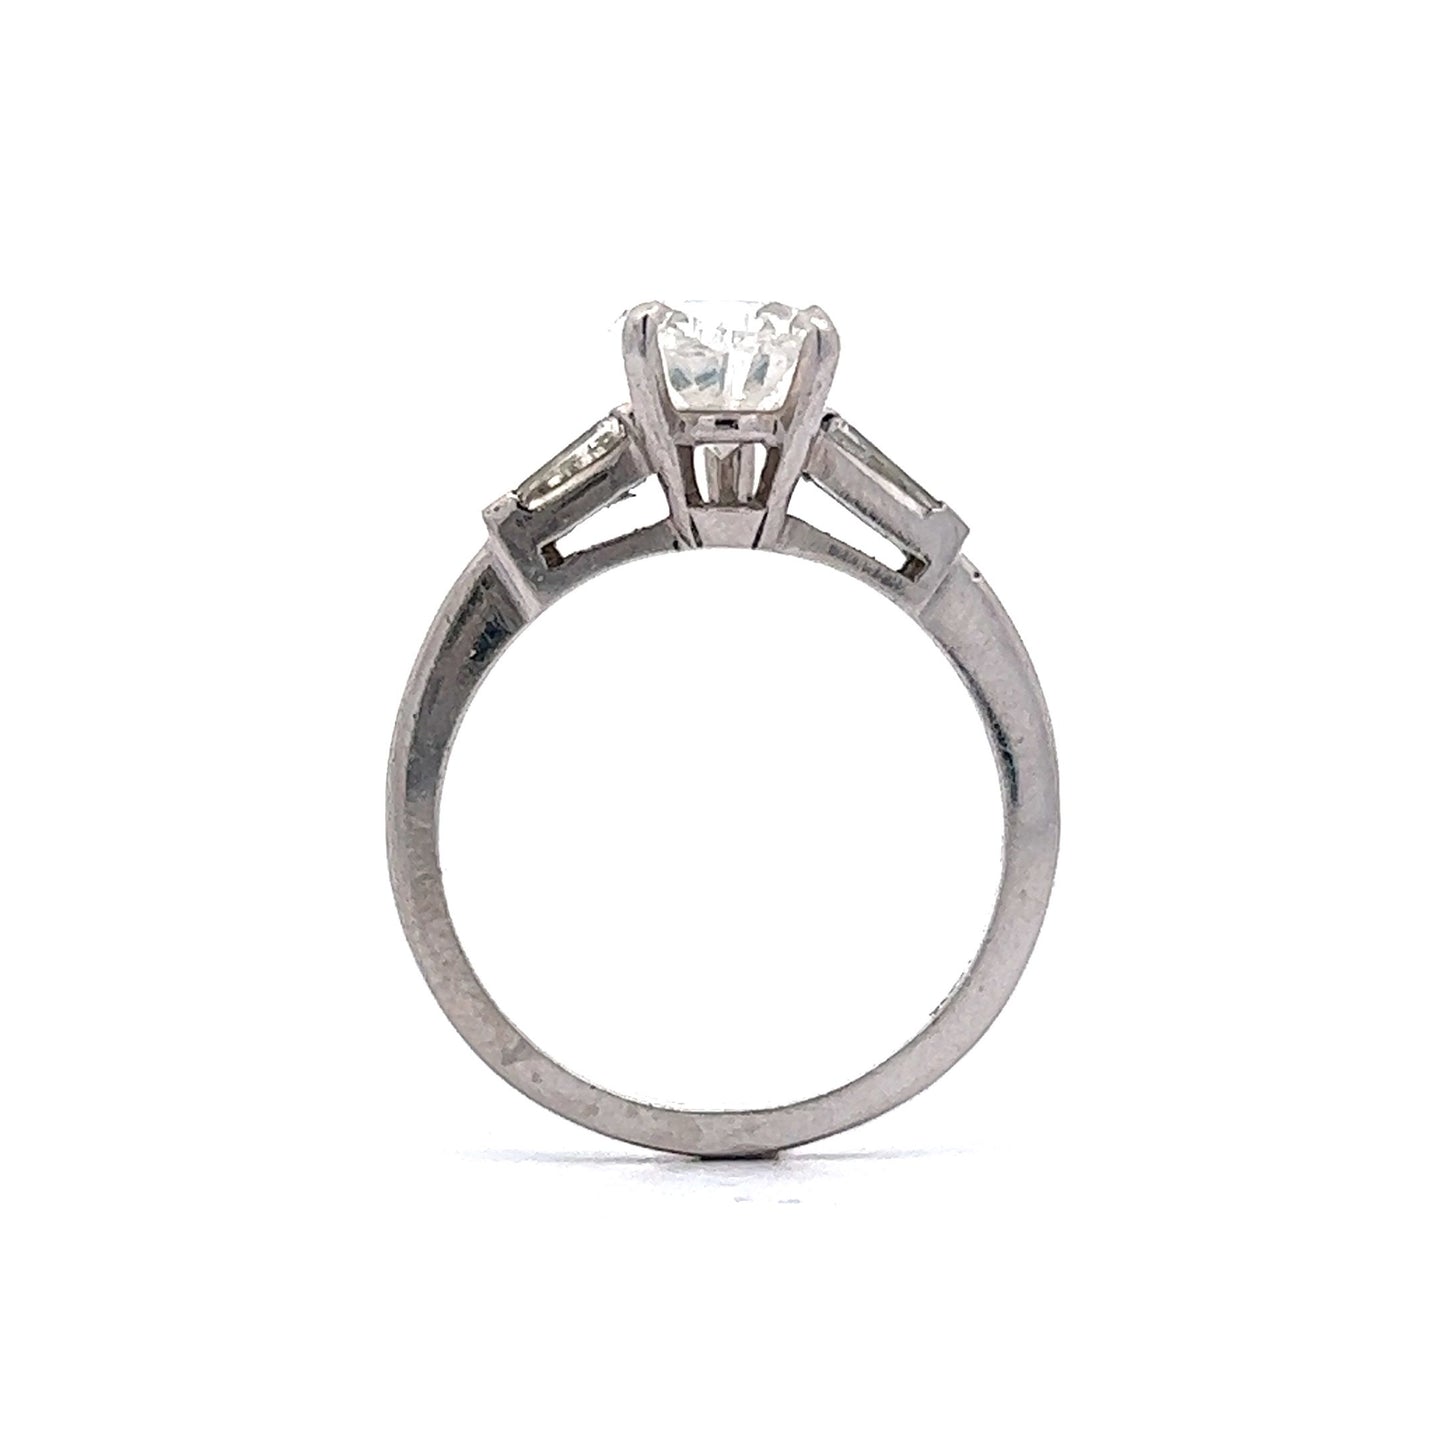 2.25 Pear Diamond Engagement Ring in Platinum